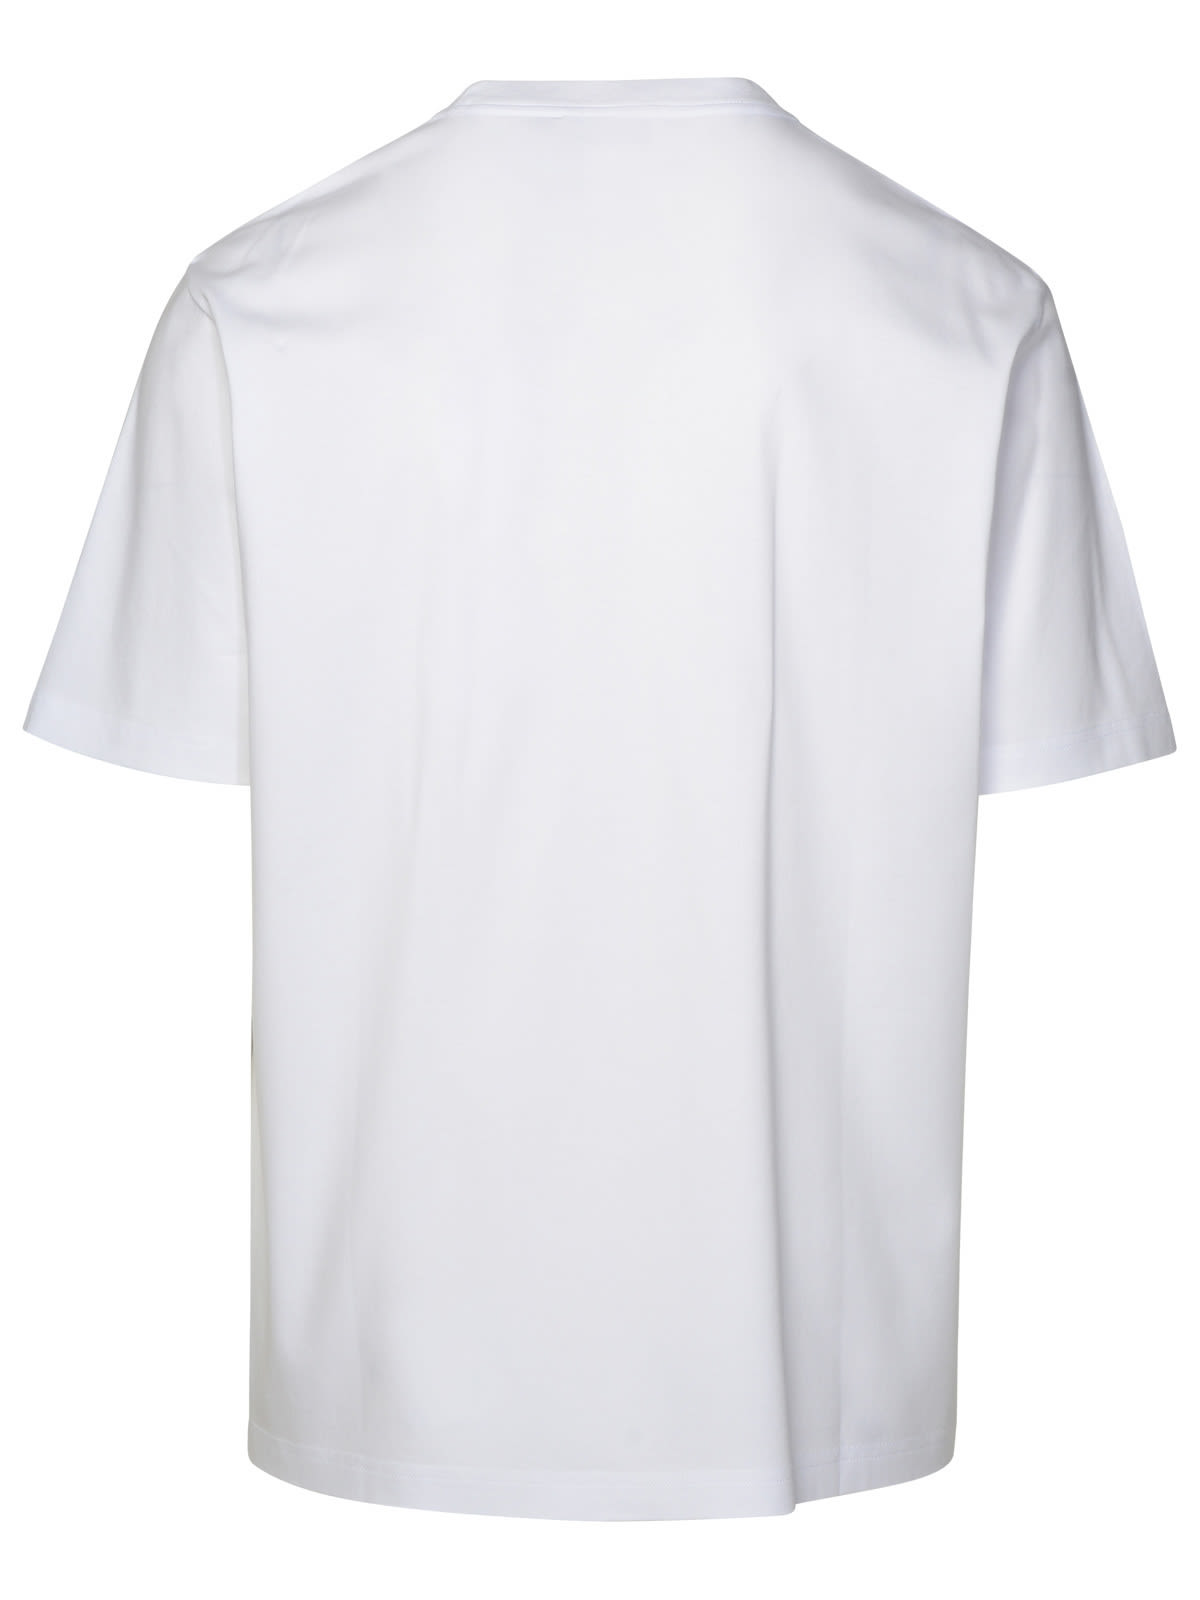 Shop Lanvin White Cotton T-shirt